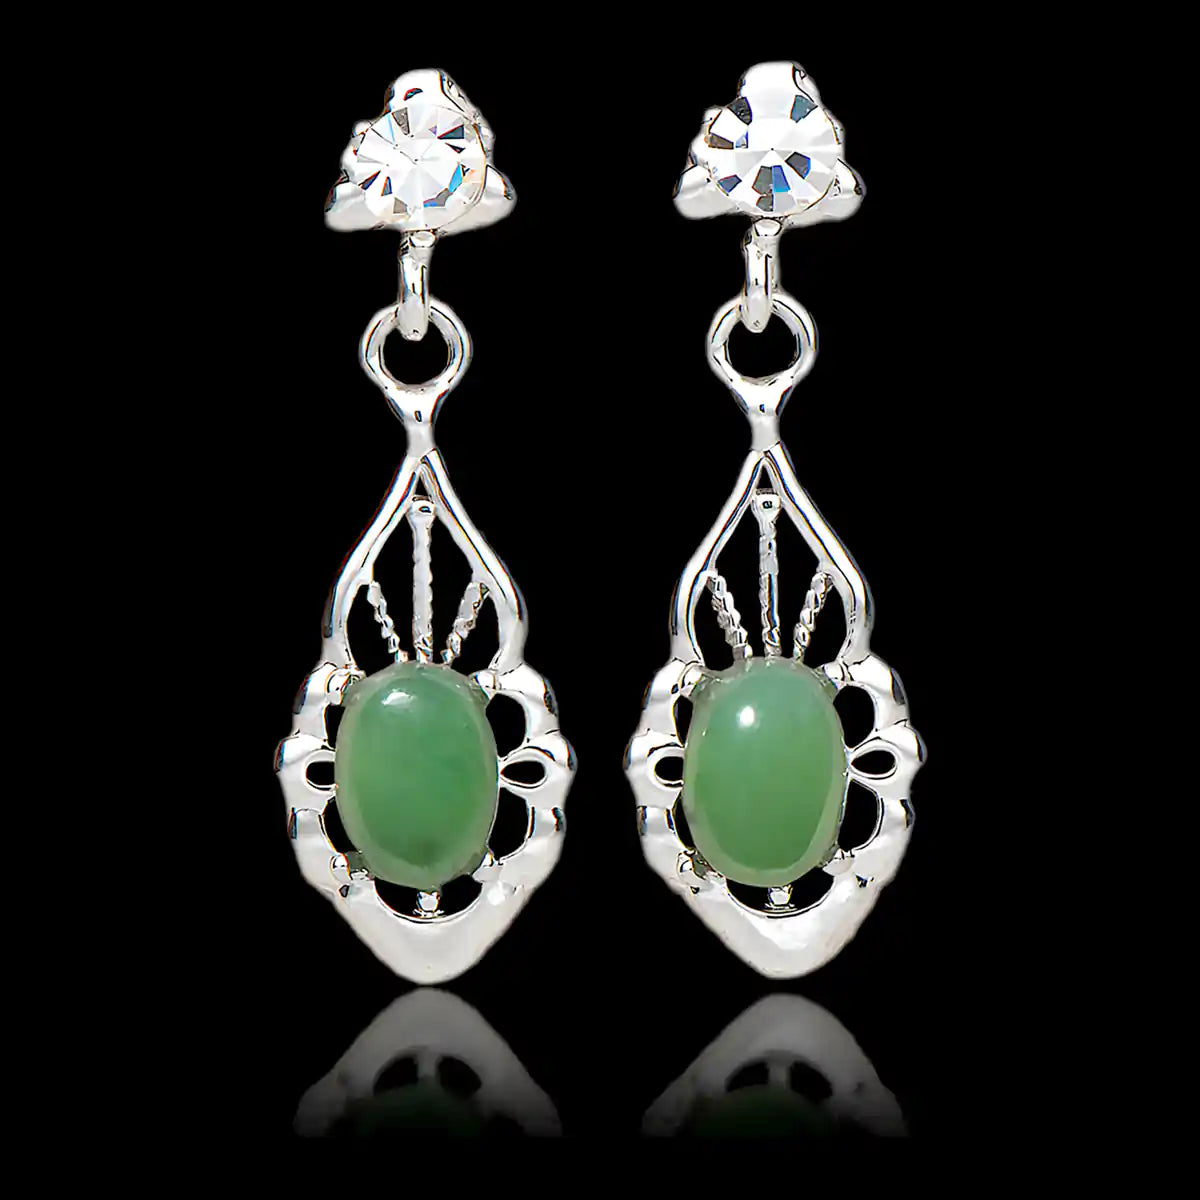 Jade vintage allure earrings